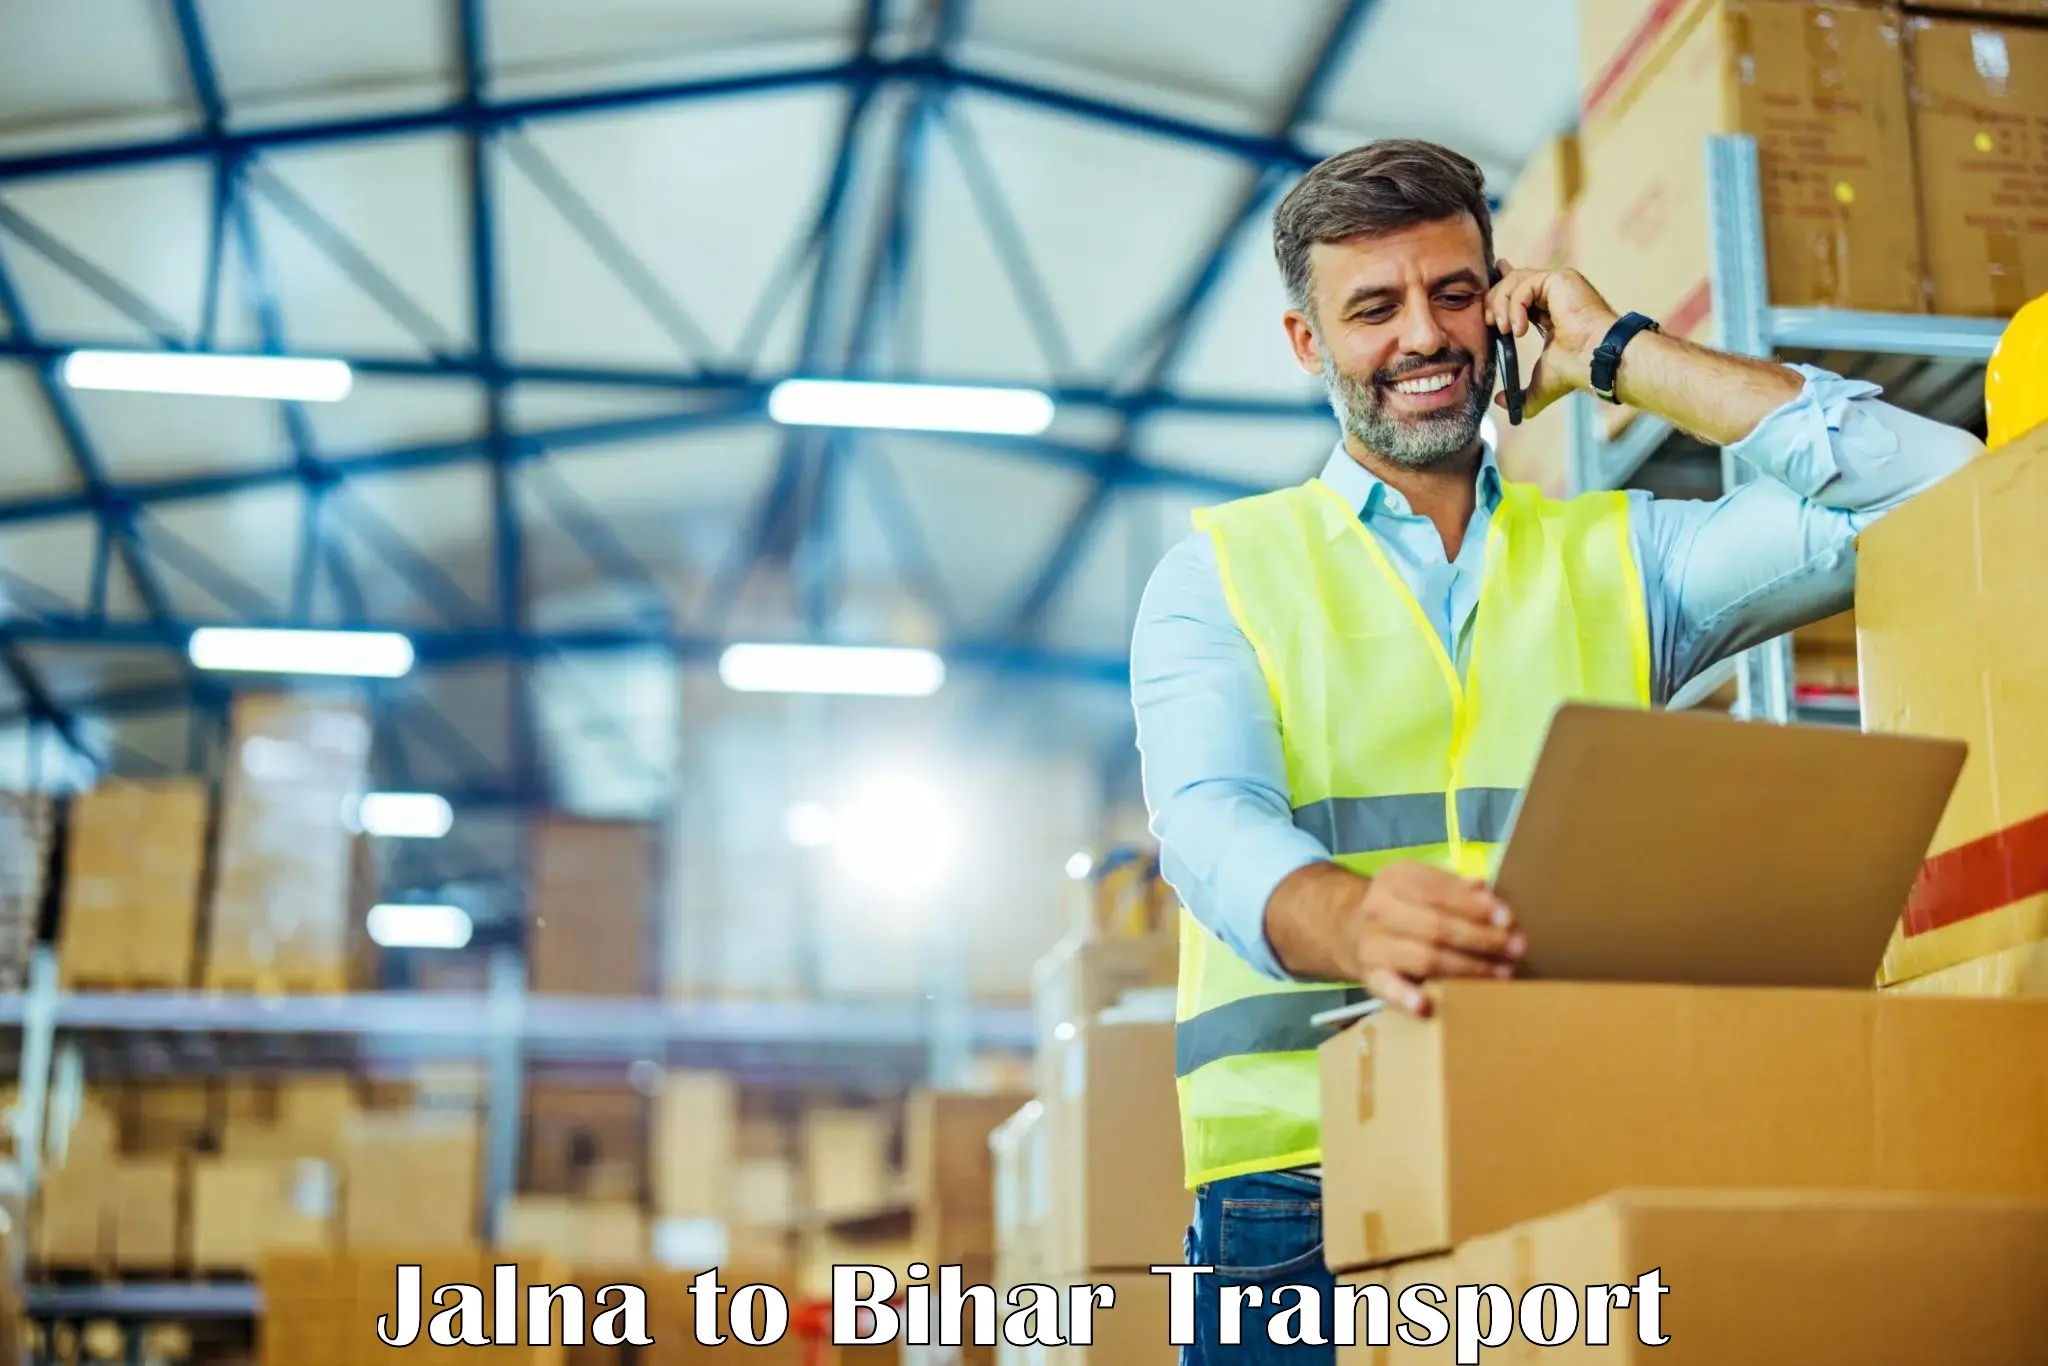 Delivery service Jalna to Pavapuri